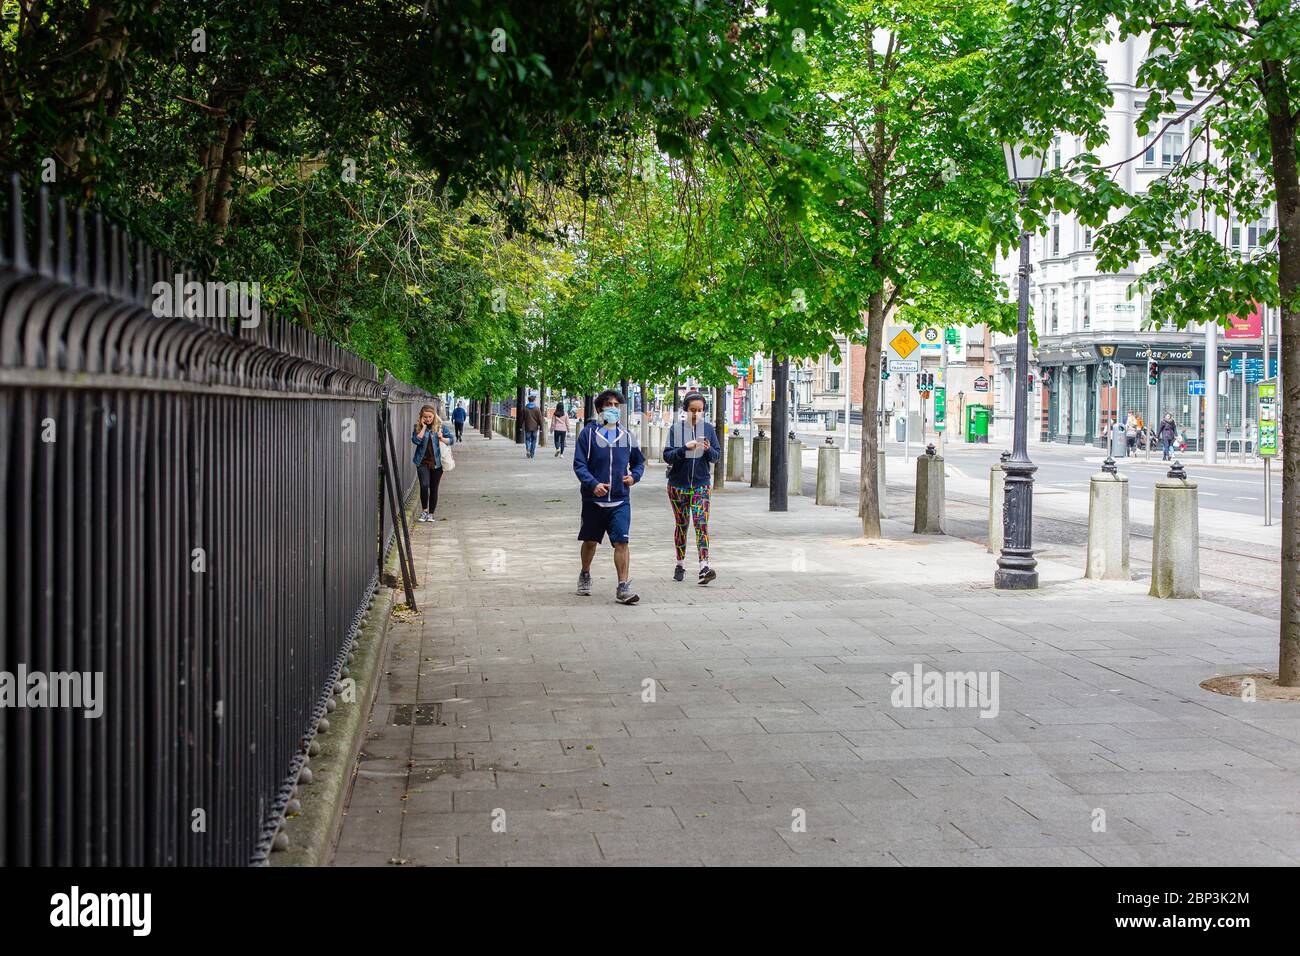 Fußgänger, die in Dublin mit Gesichtsmasken spazieren und die soziale Distanzierungsregel einhalten, indem sie im Freien in öffentlichen Bereichen Sicherheitsabstand einhalten. Stockfoto